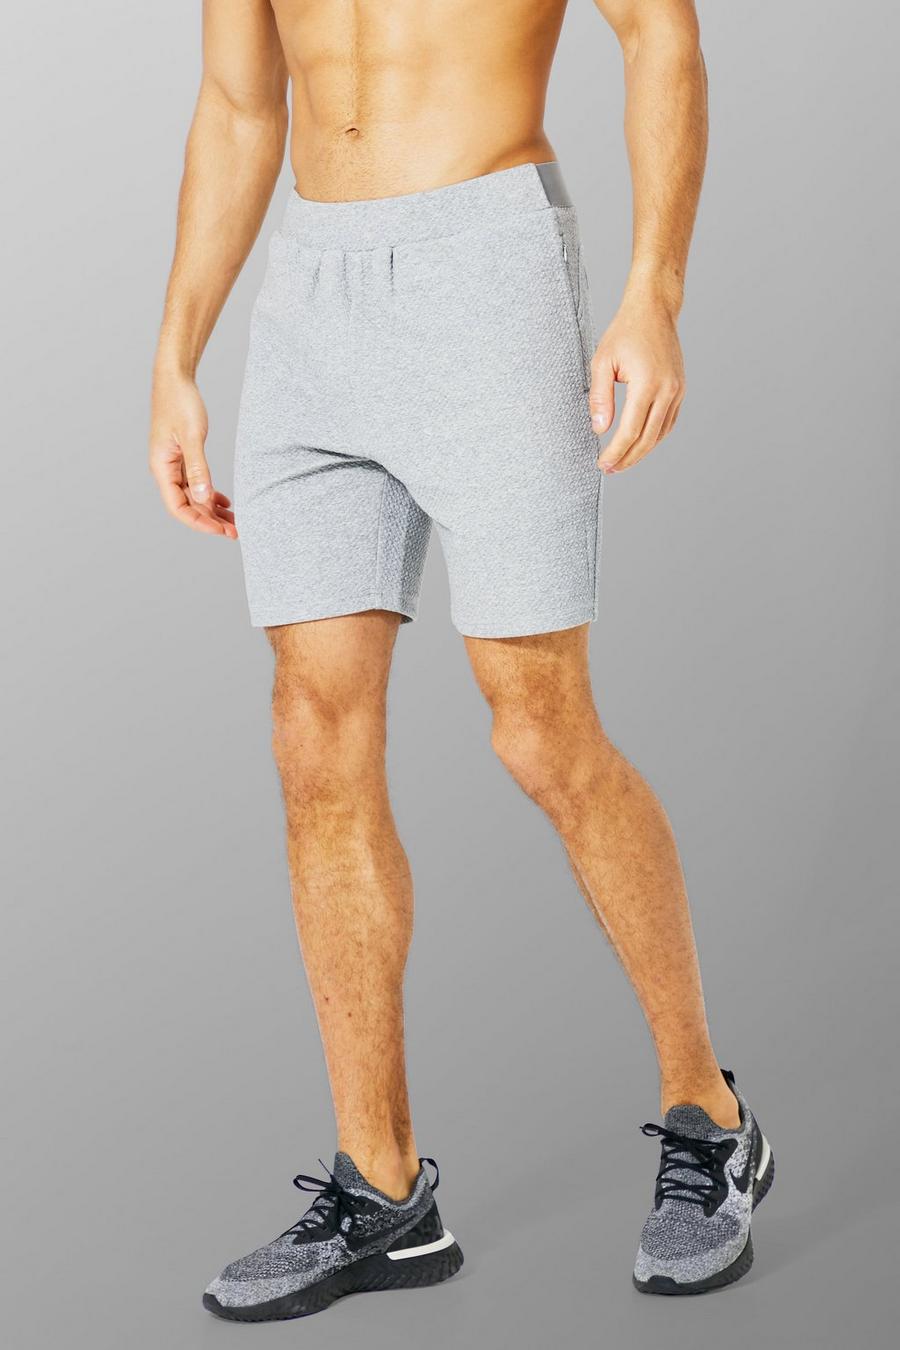 Pantalón corto MAN Active de punto elástico técnico, Grey grigio